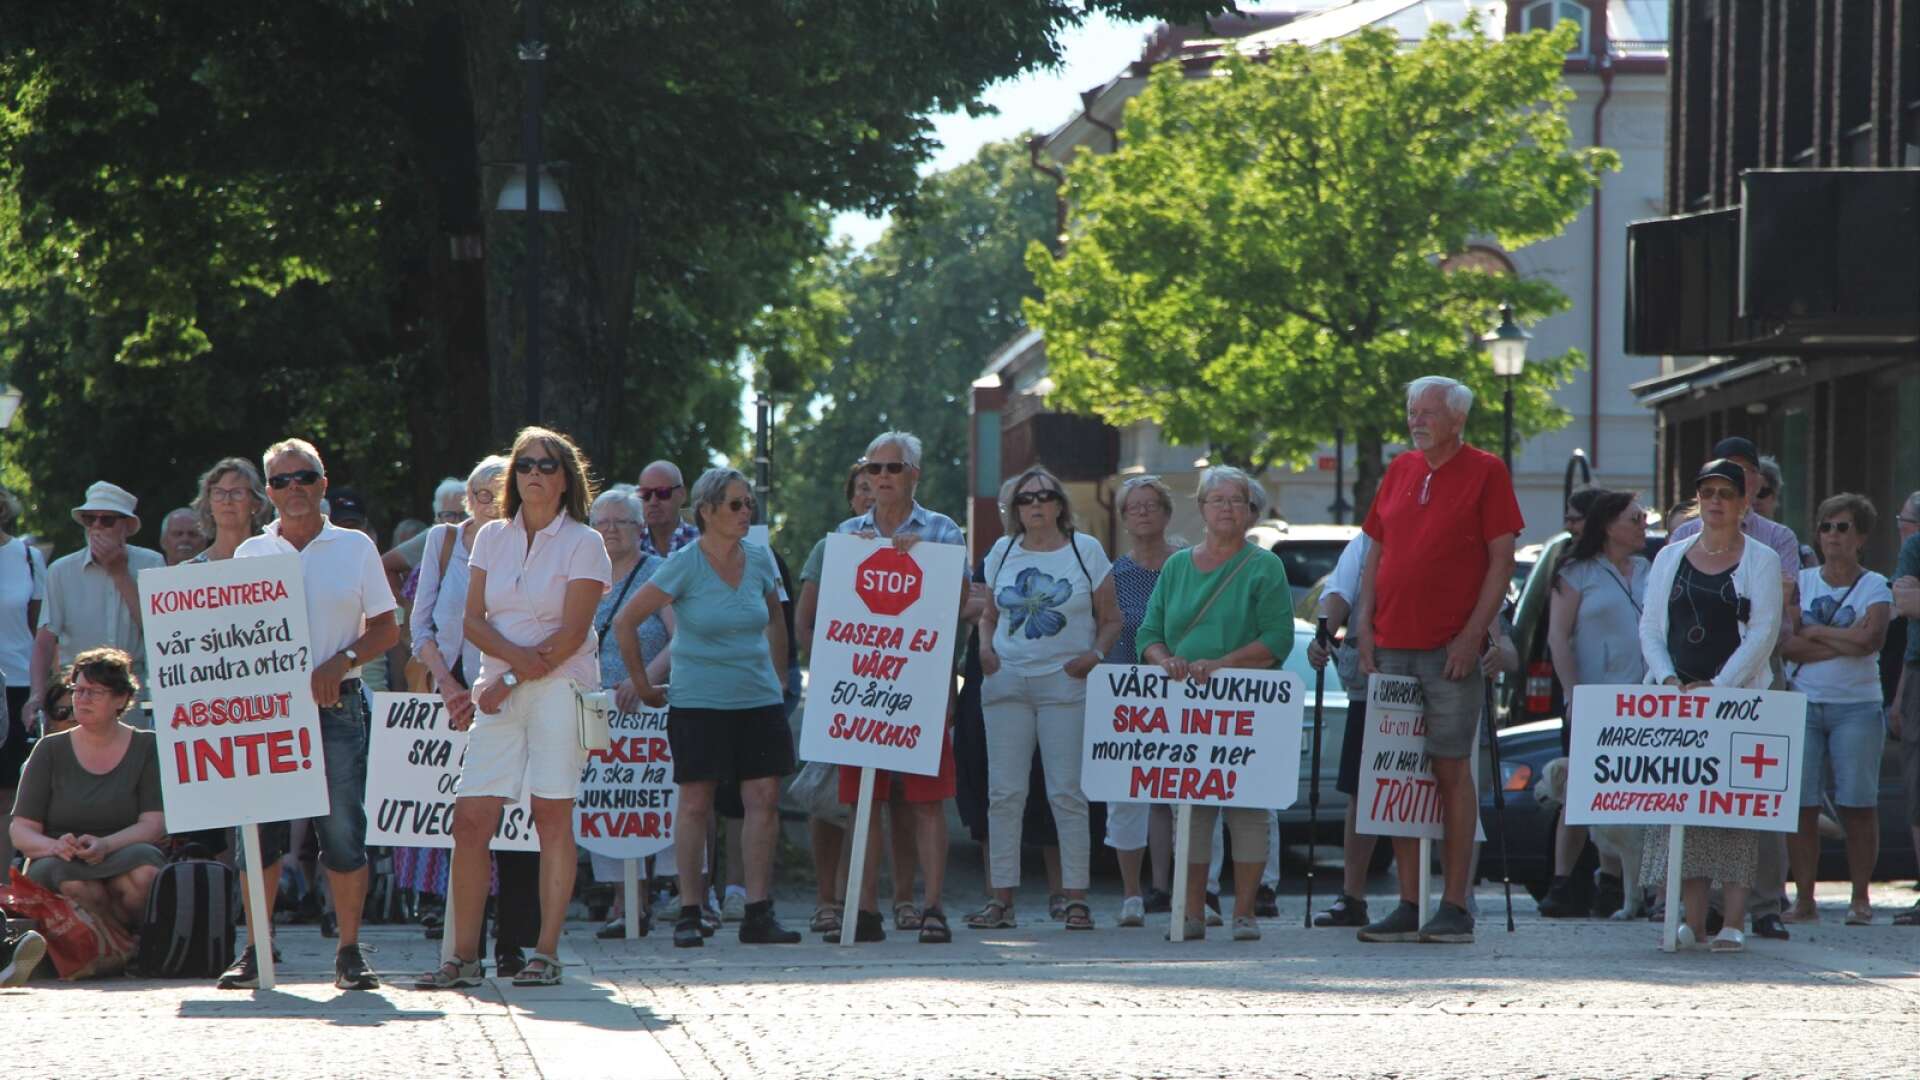 Under sommaren demonstrerade en stor grupp människor för att bevara Mariestads sjukhus. Det tog politikerna till sig. Nu kommer förslag på att rädda verksamheten i Mariestad.